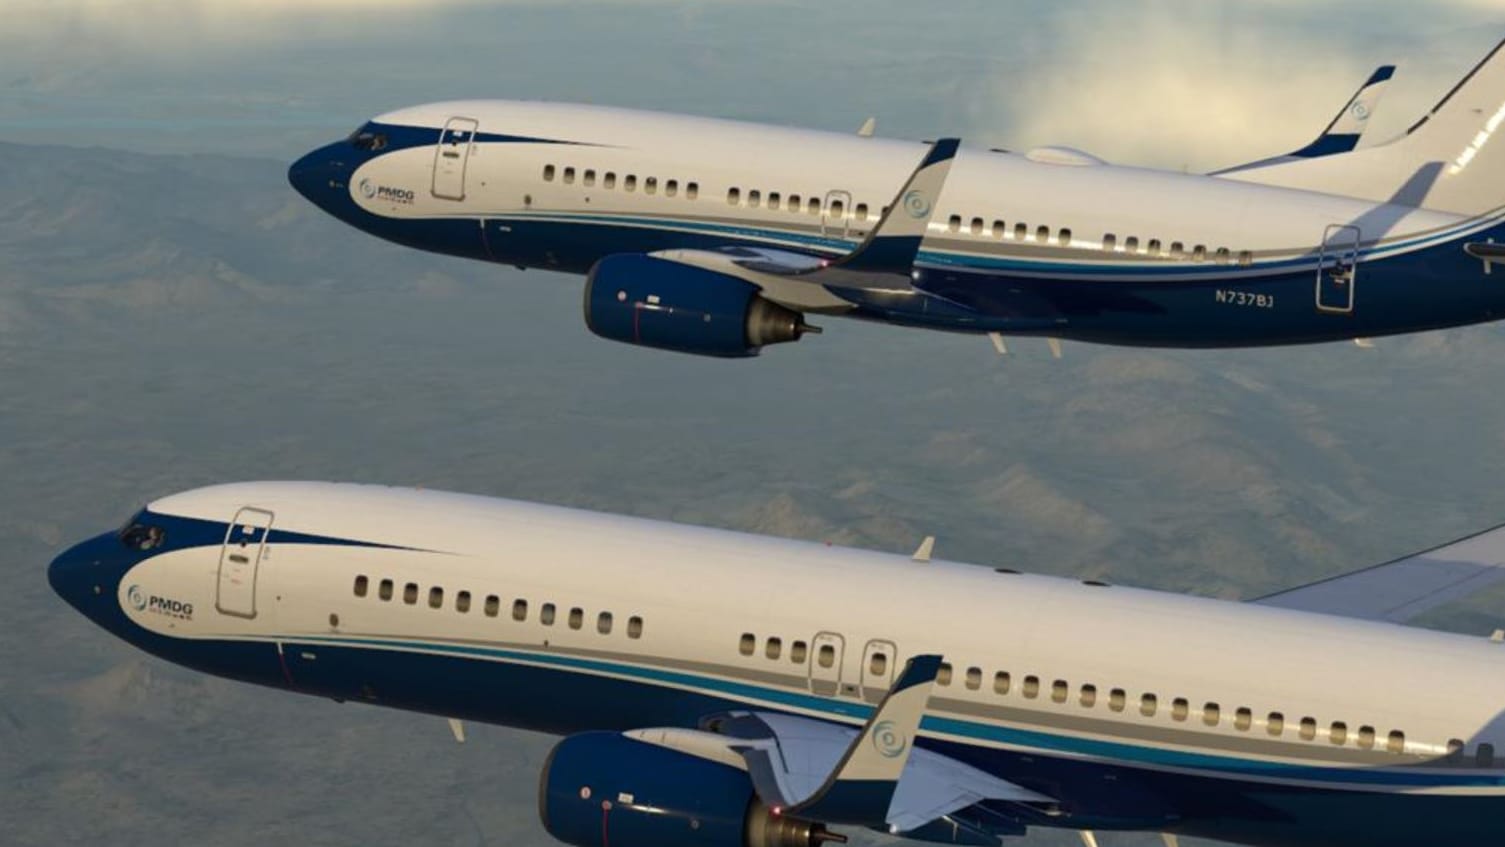 Msfs Pmdg 737 Kommt Ende 2021 Cruiselevel Flugsimulation News